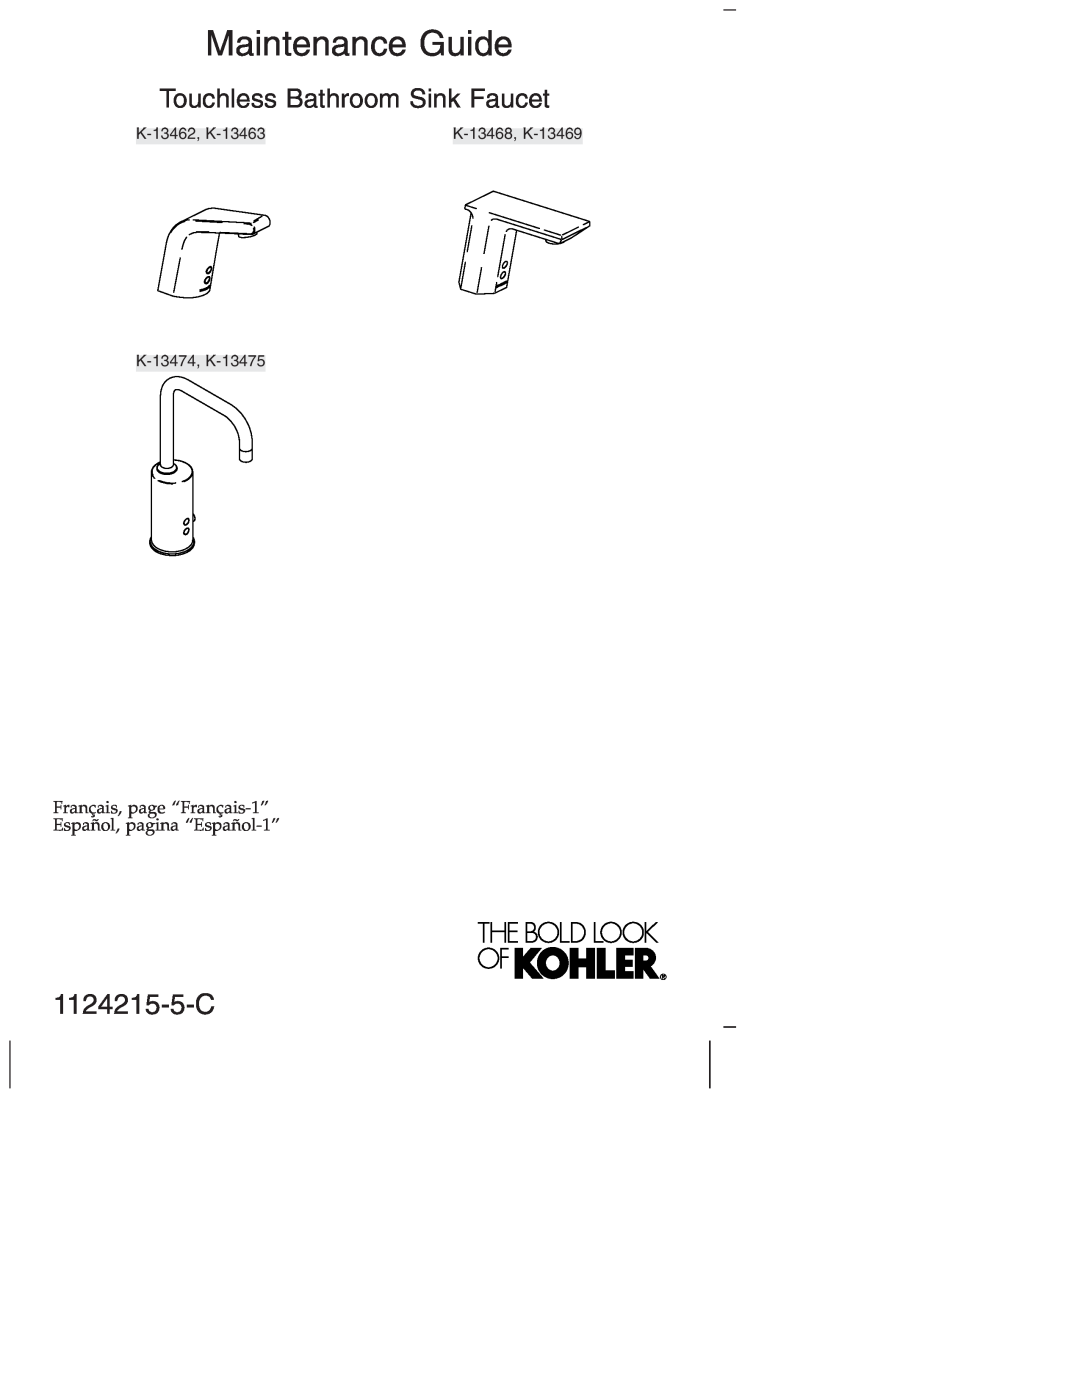 Kohler K-1374 manual 1124215-5-C, Maintenance Guide, Touchless Bathroom Sink Faucet, K-13474, K-13475, K-13462, K-13463 